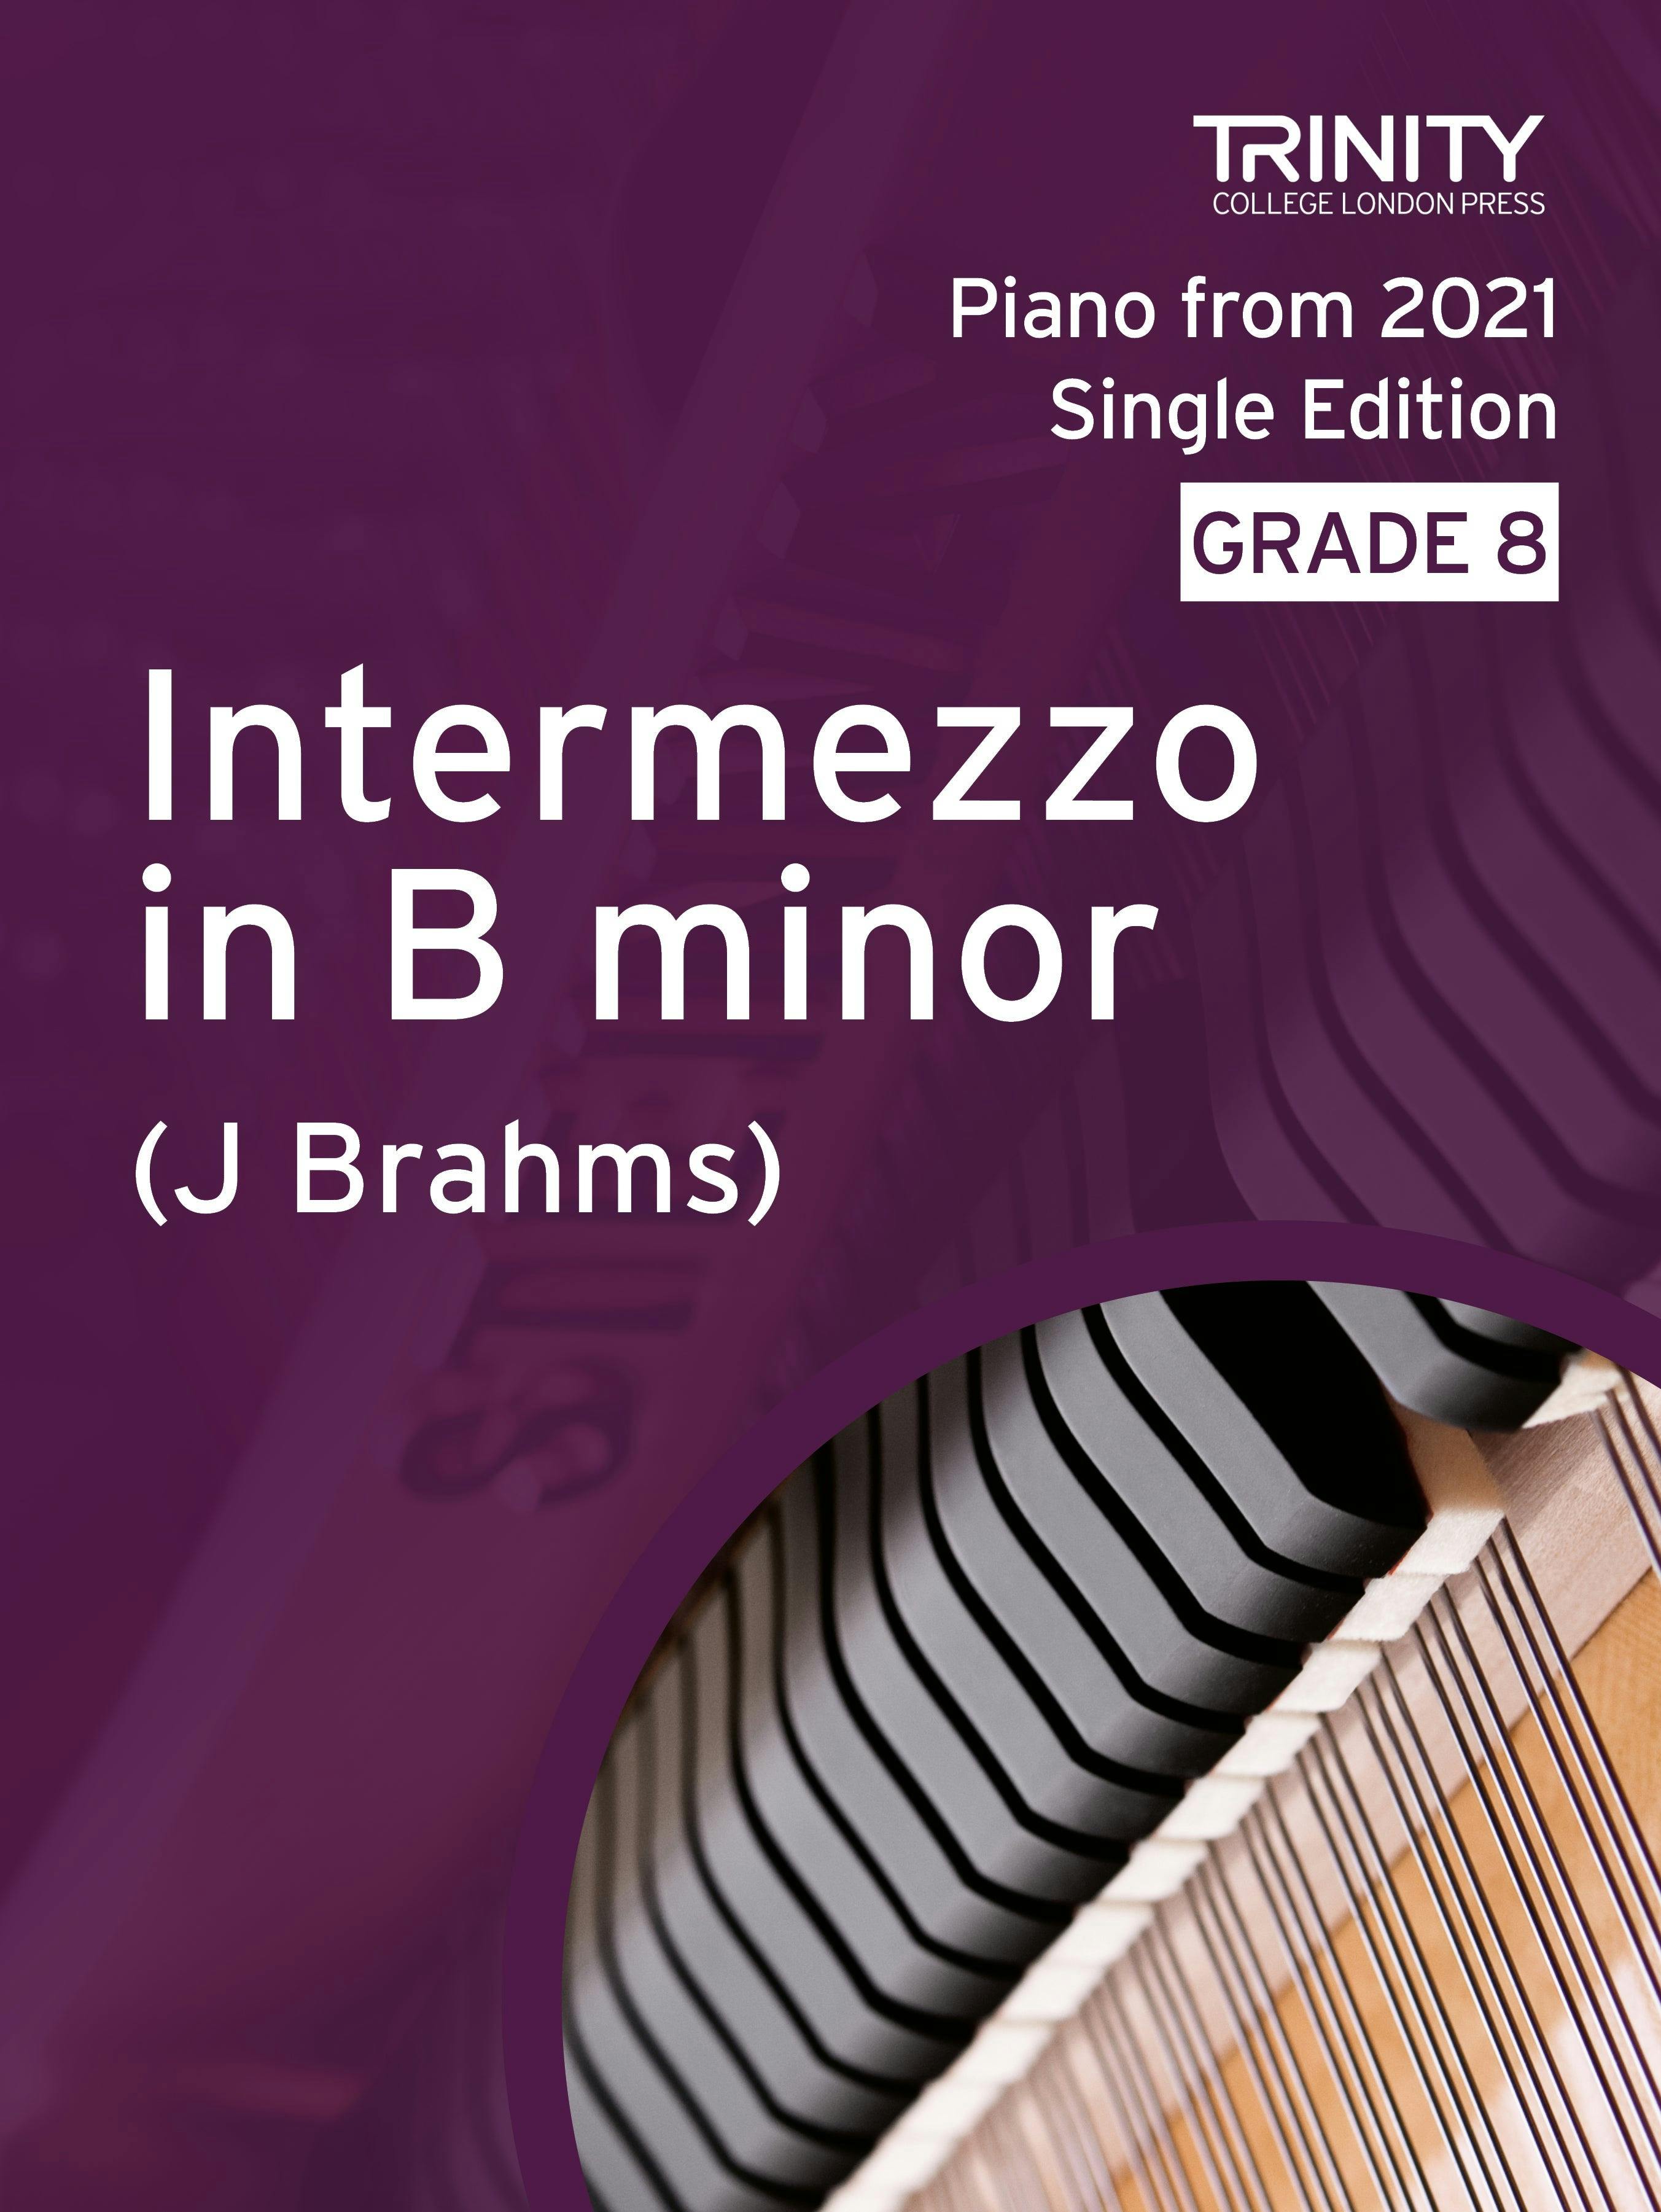 Intermezzo in B minor, op. 119 no. 1 - Brahms (Grade 8 Piano) - ebook